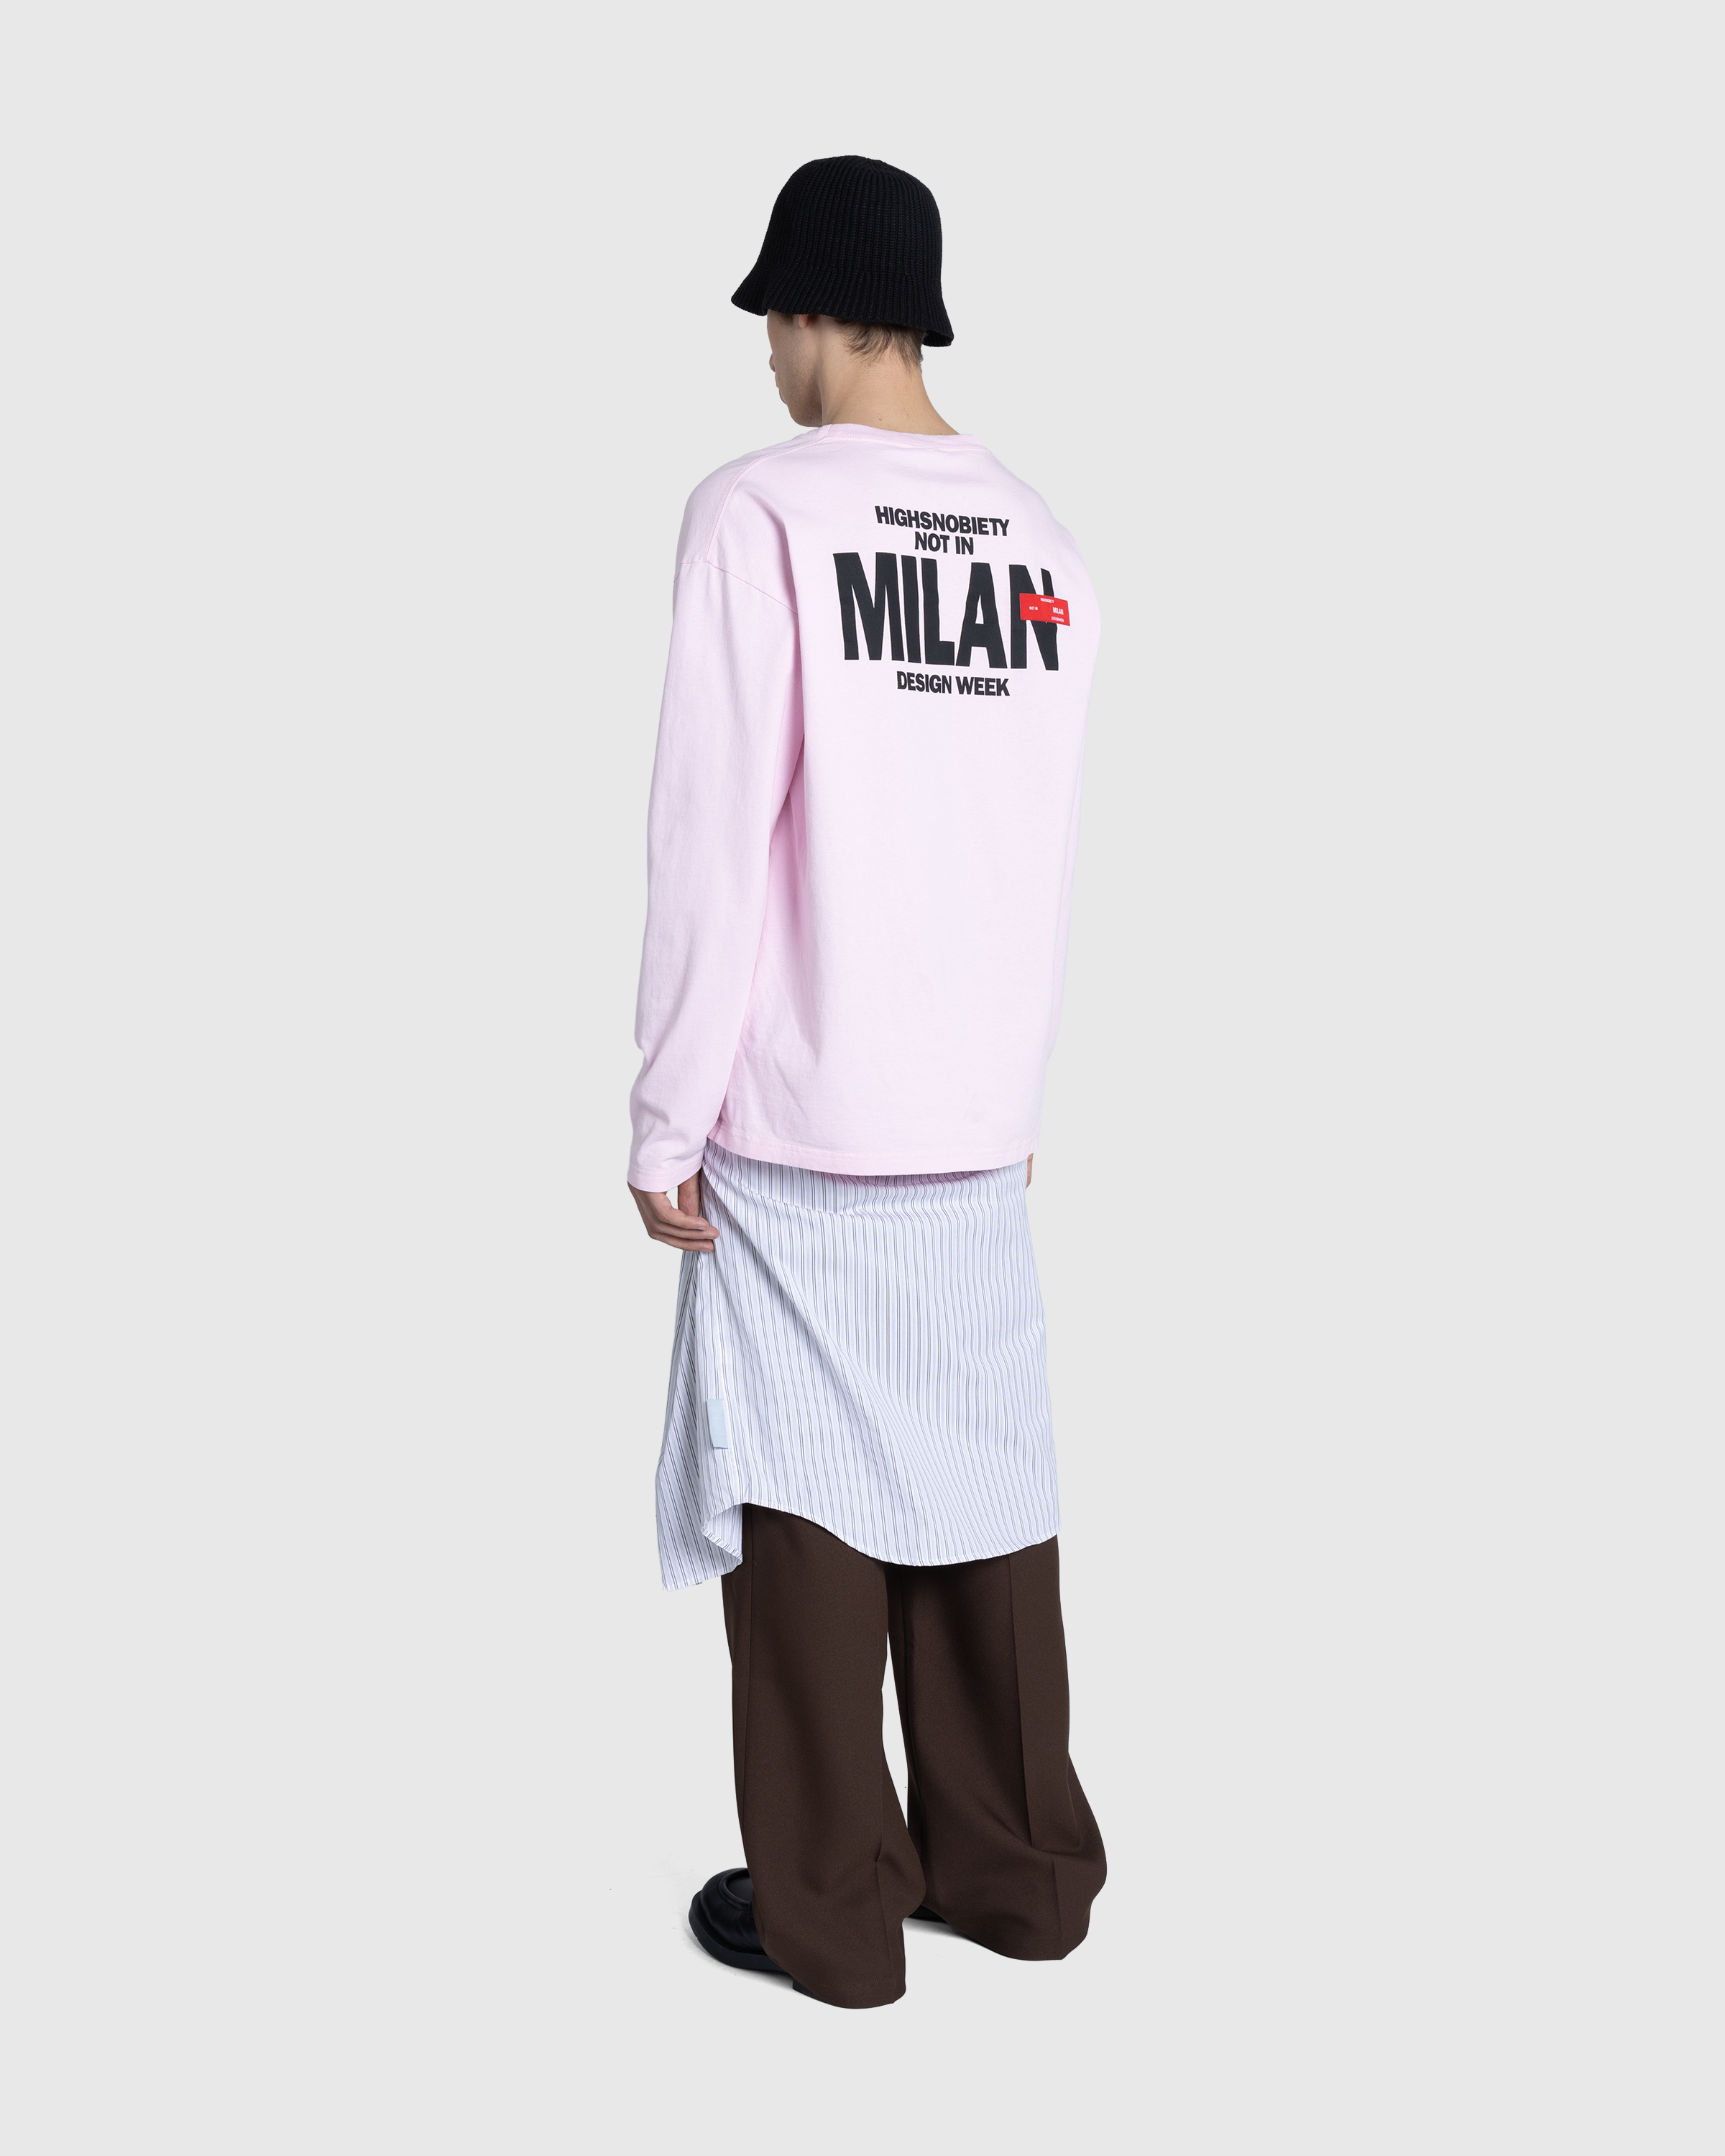 Highsnobiety – Not in Milan Long-Sleeve Pink - Longsleeves - Pink - Image 5